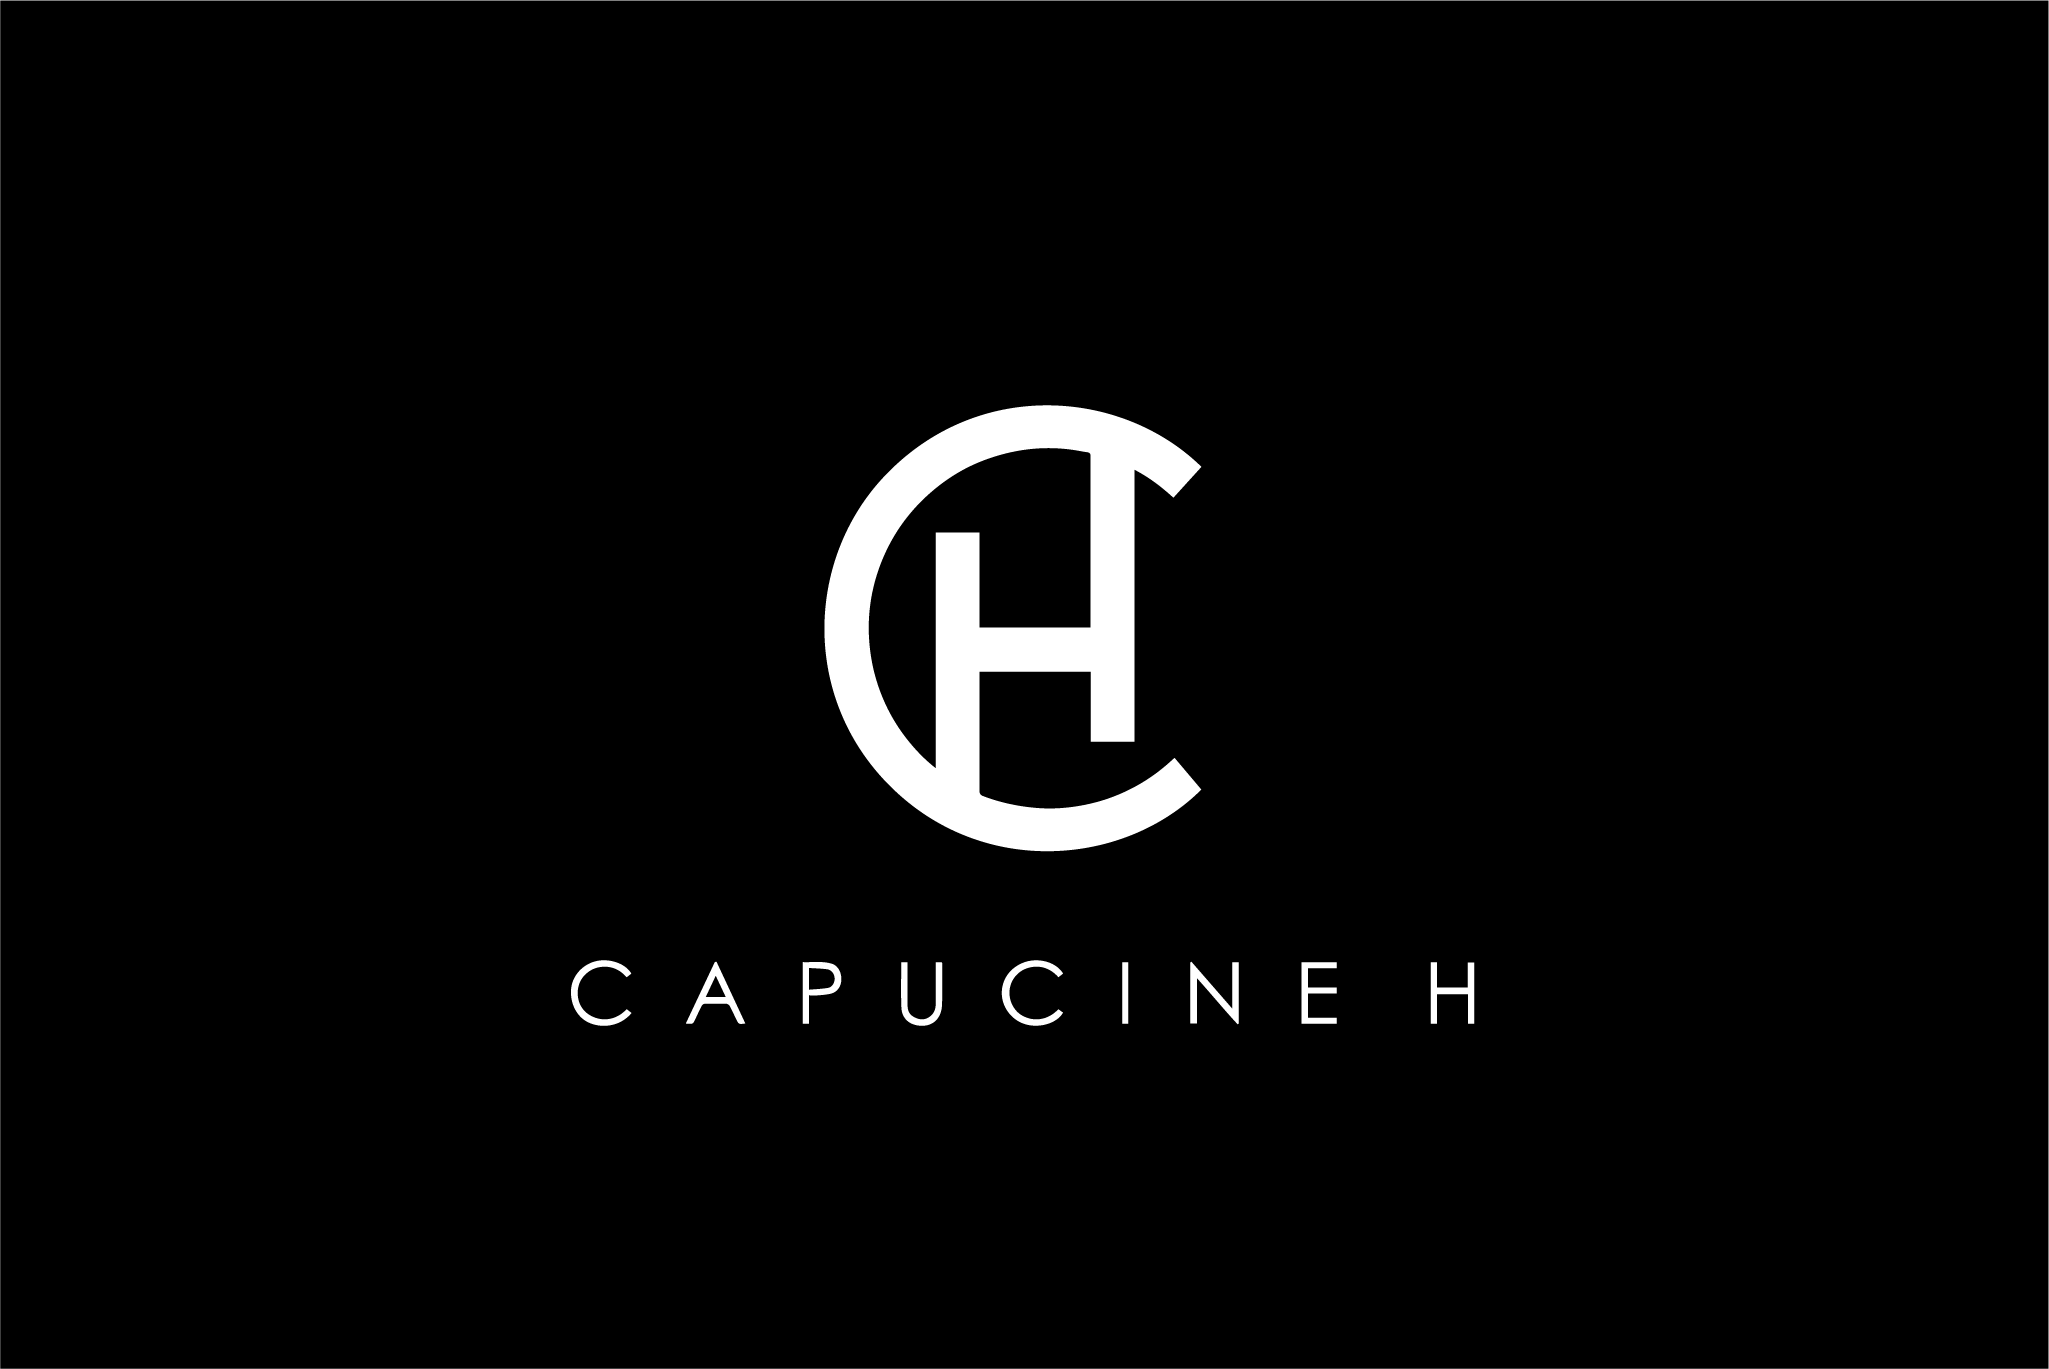 PR Capucine H